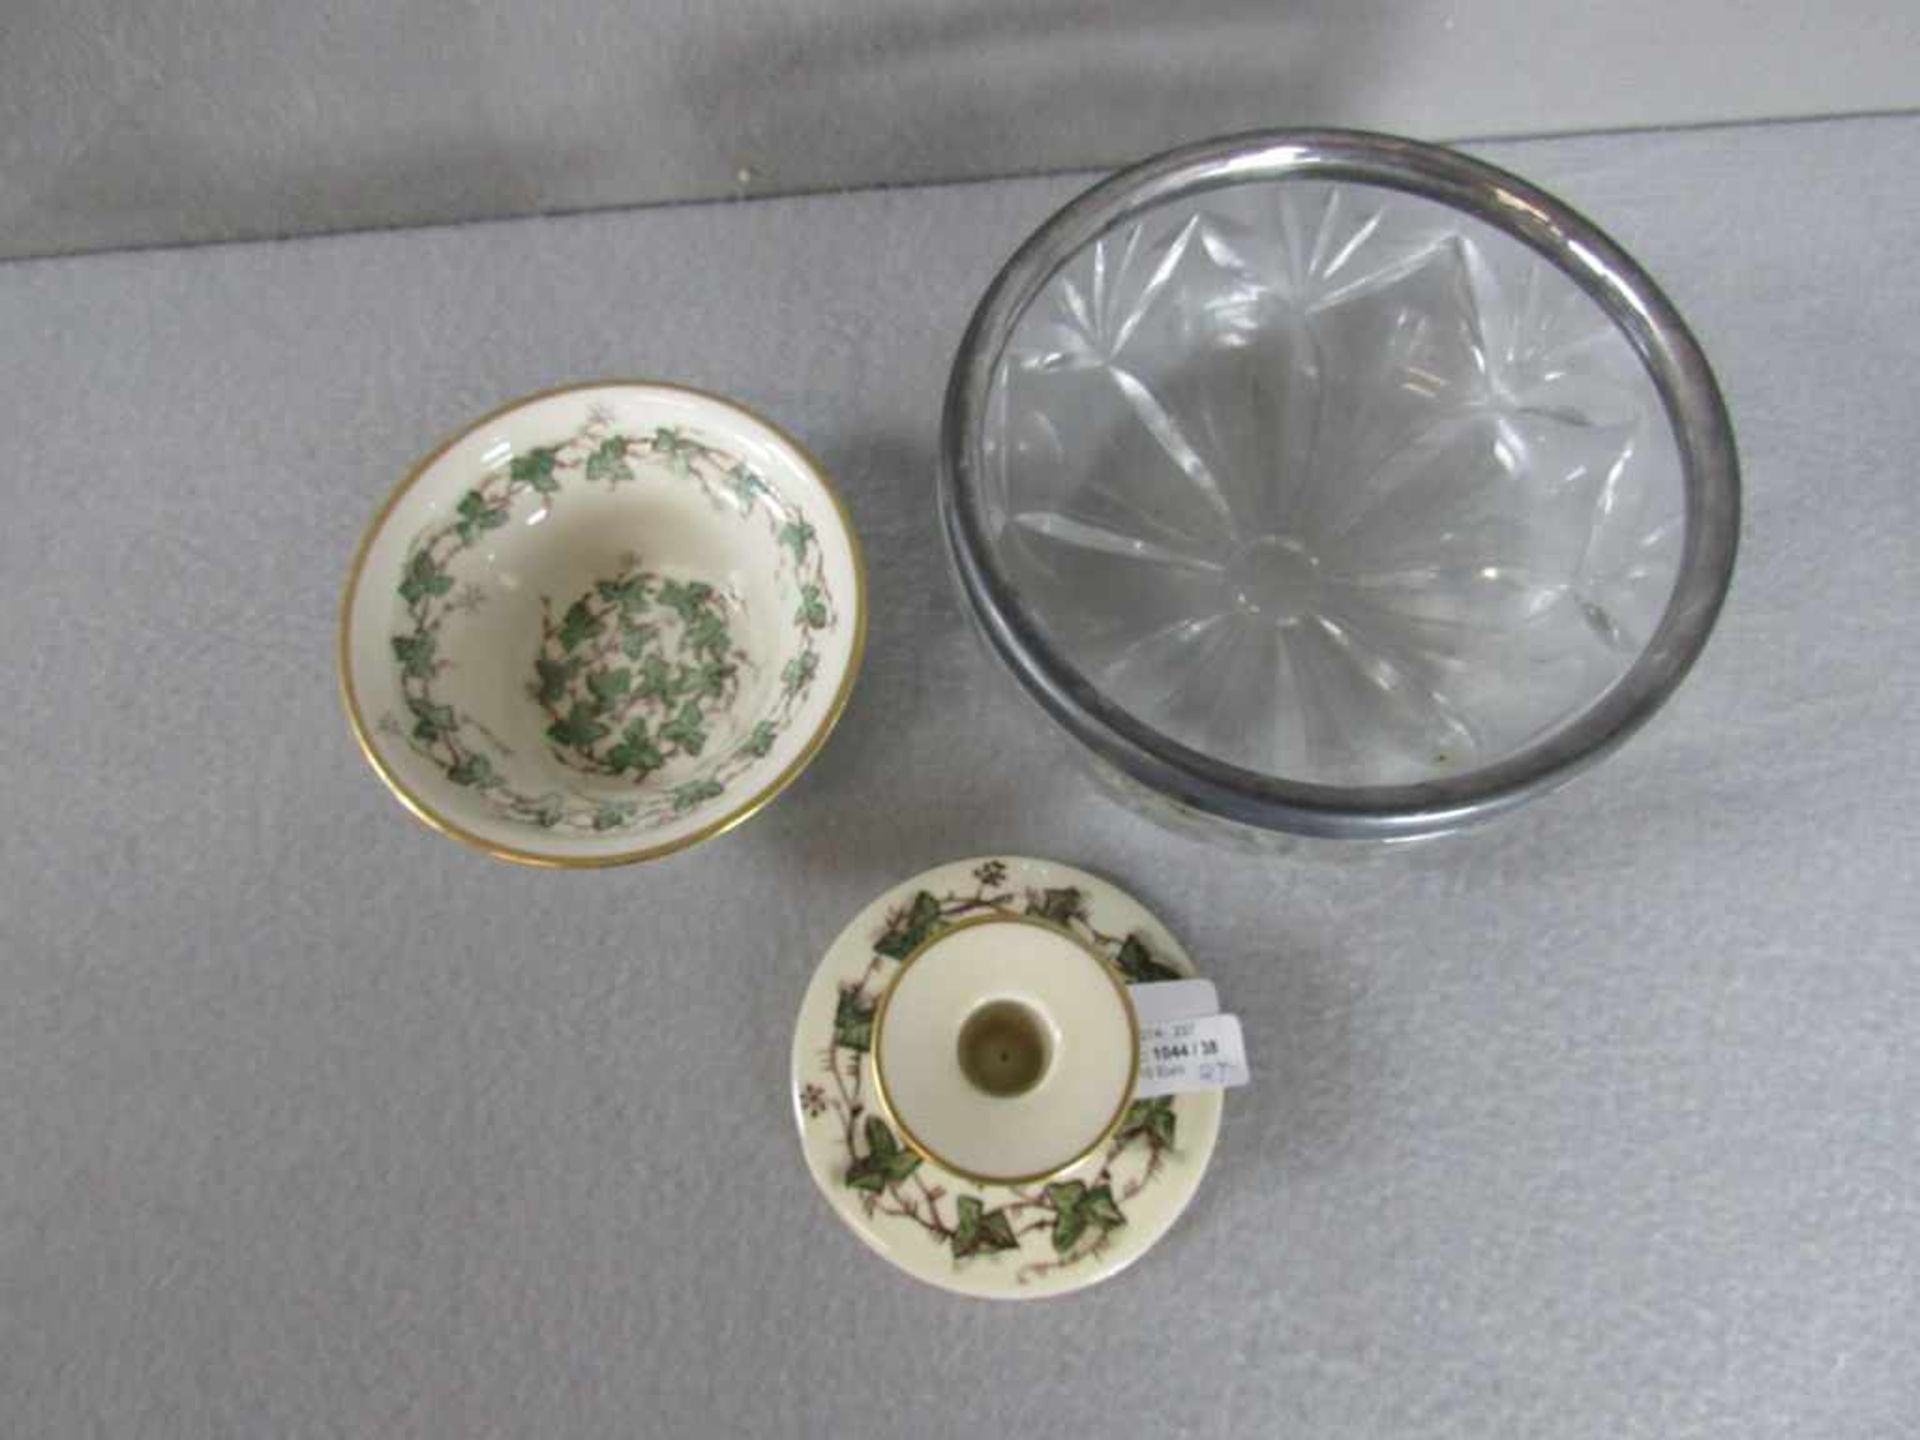 2 Teile Porzellan Royal Kopenhagen 3- Wellenmarke mit Signatur FM und Beigabe Glasschale mit Montur - Bild 2 aus 2